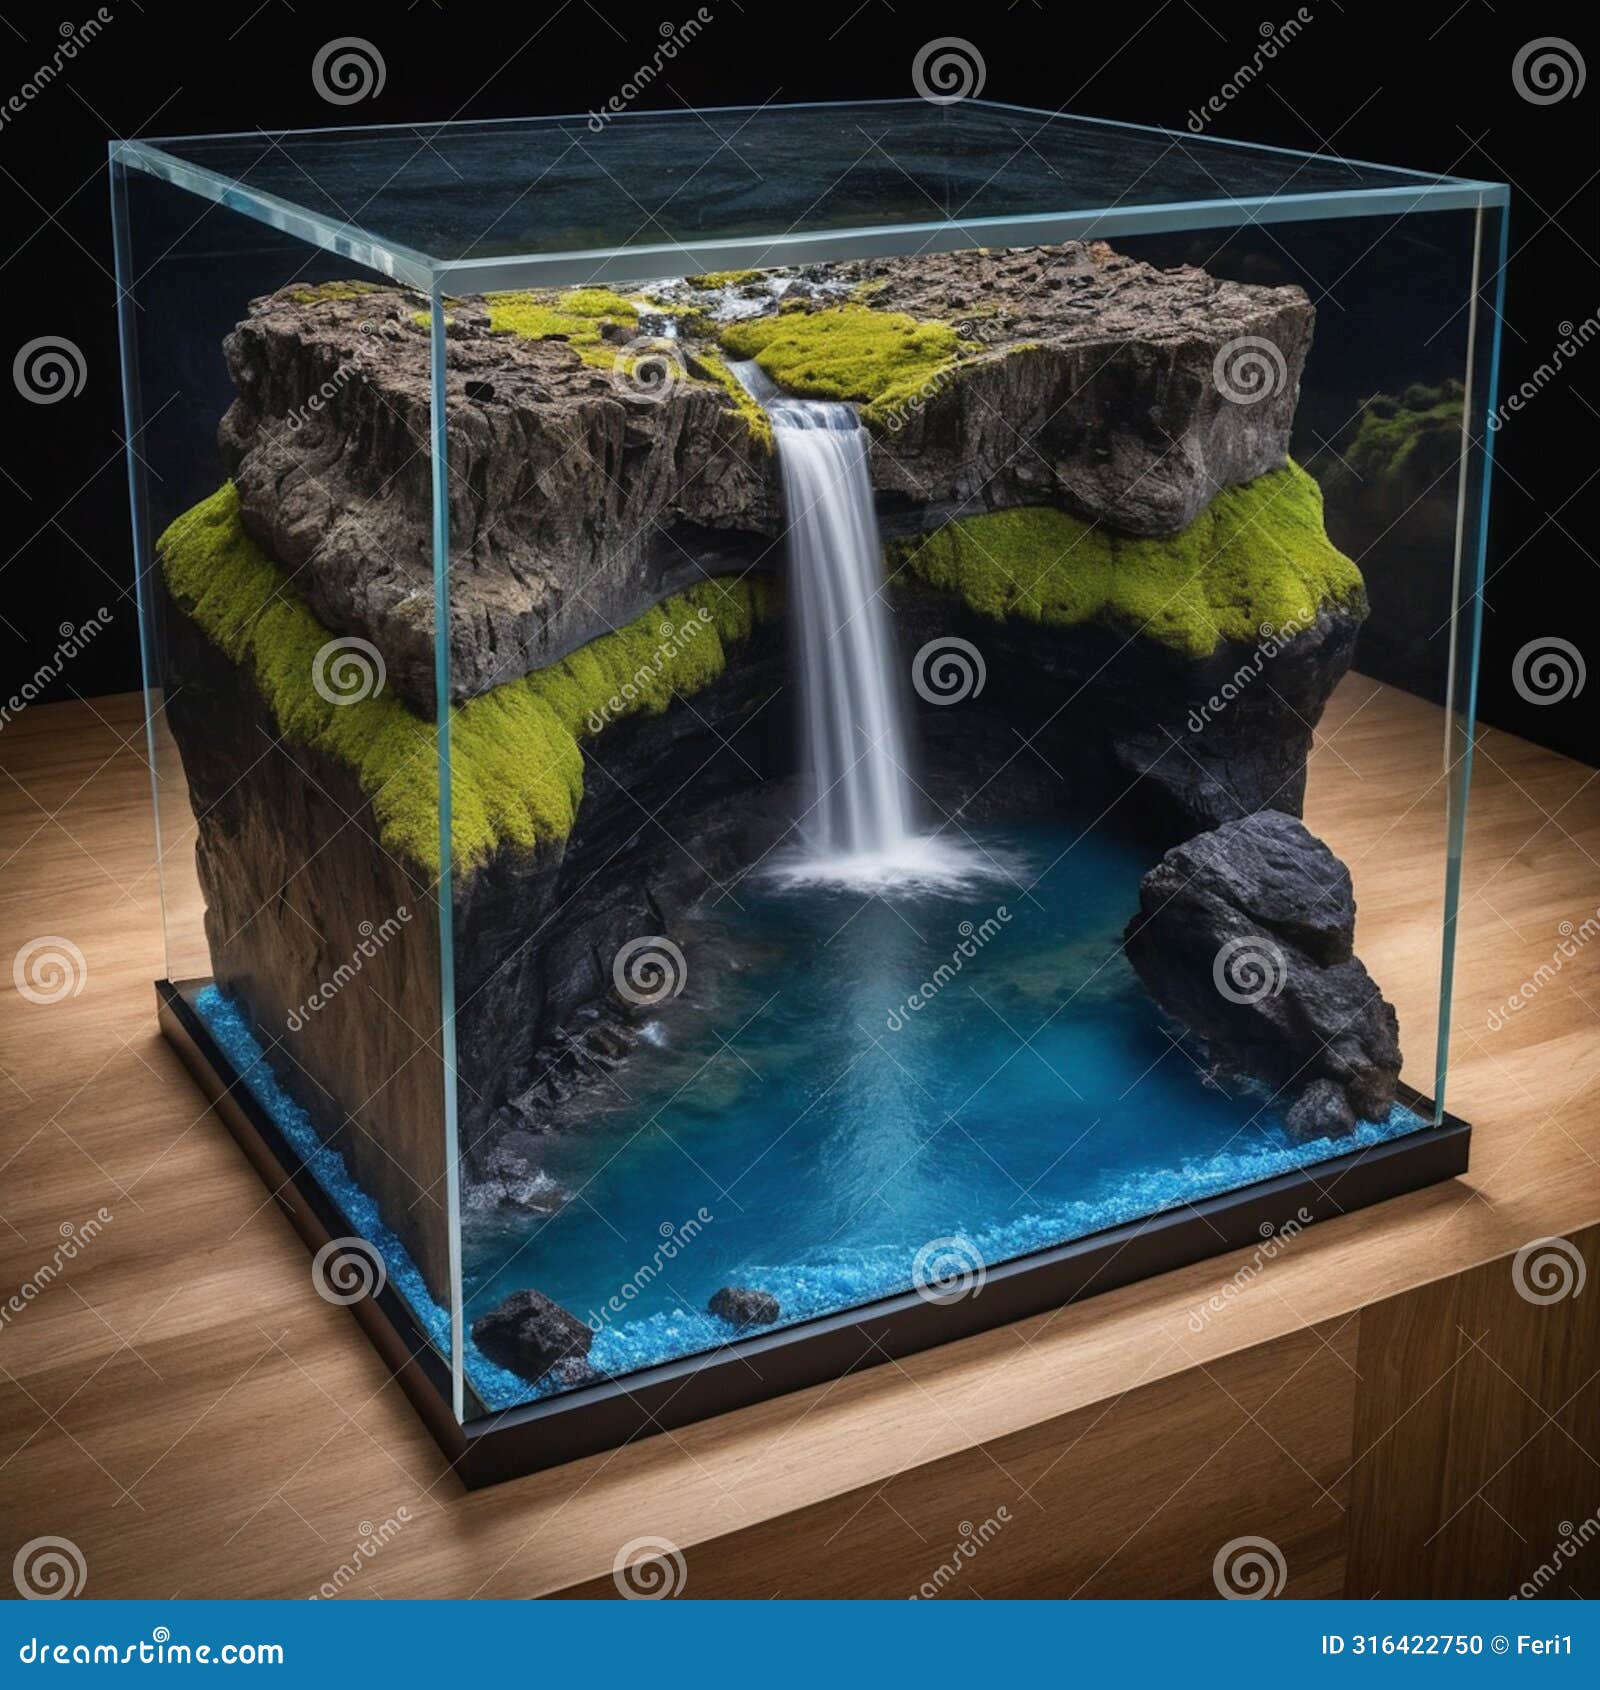 world enclosed in aquarium.